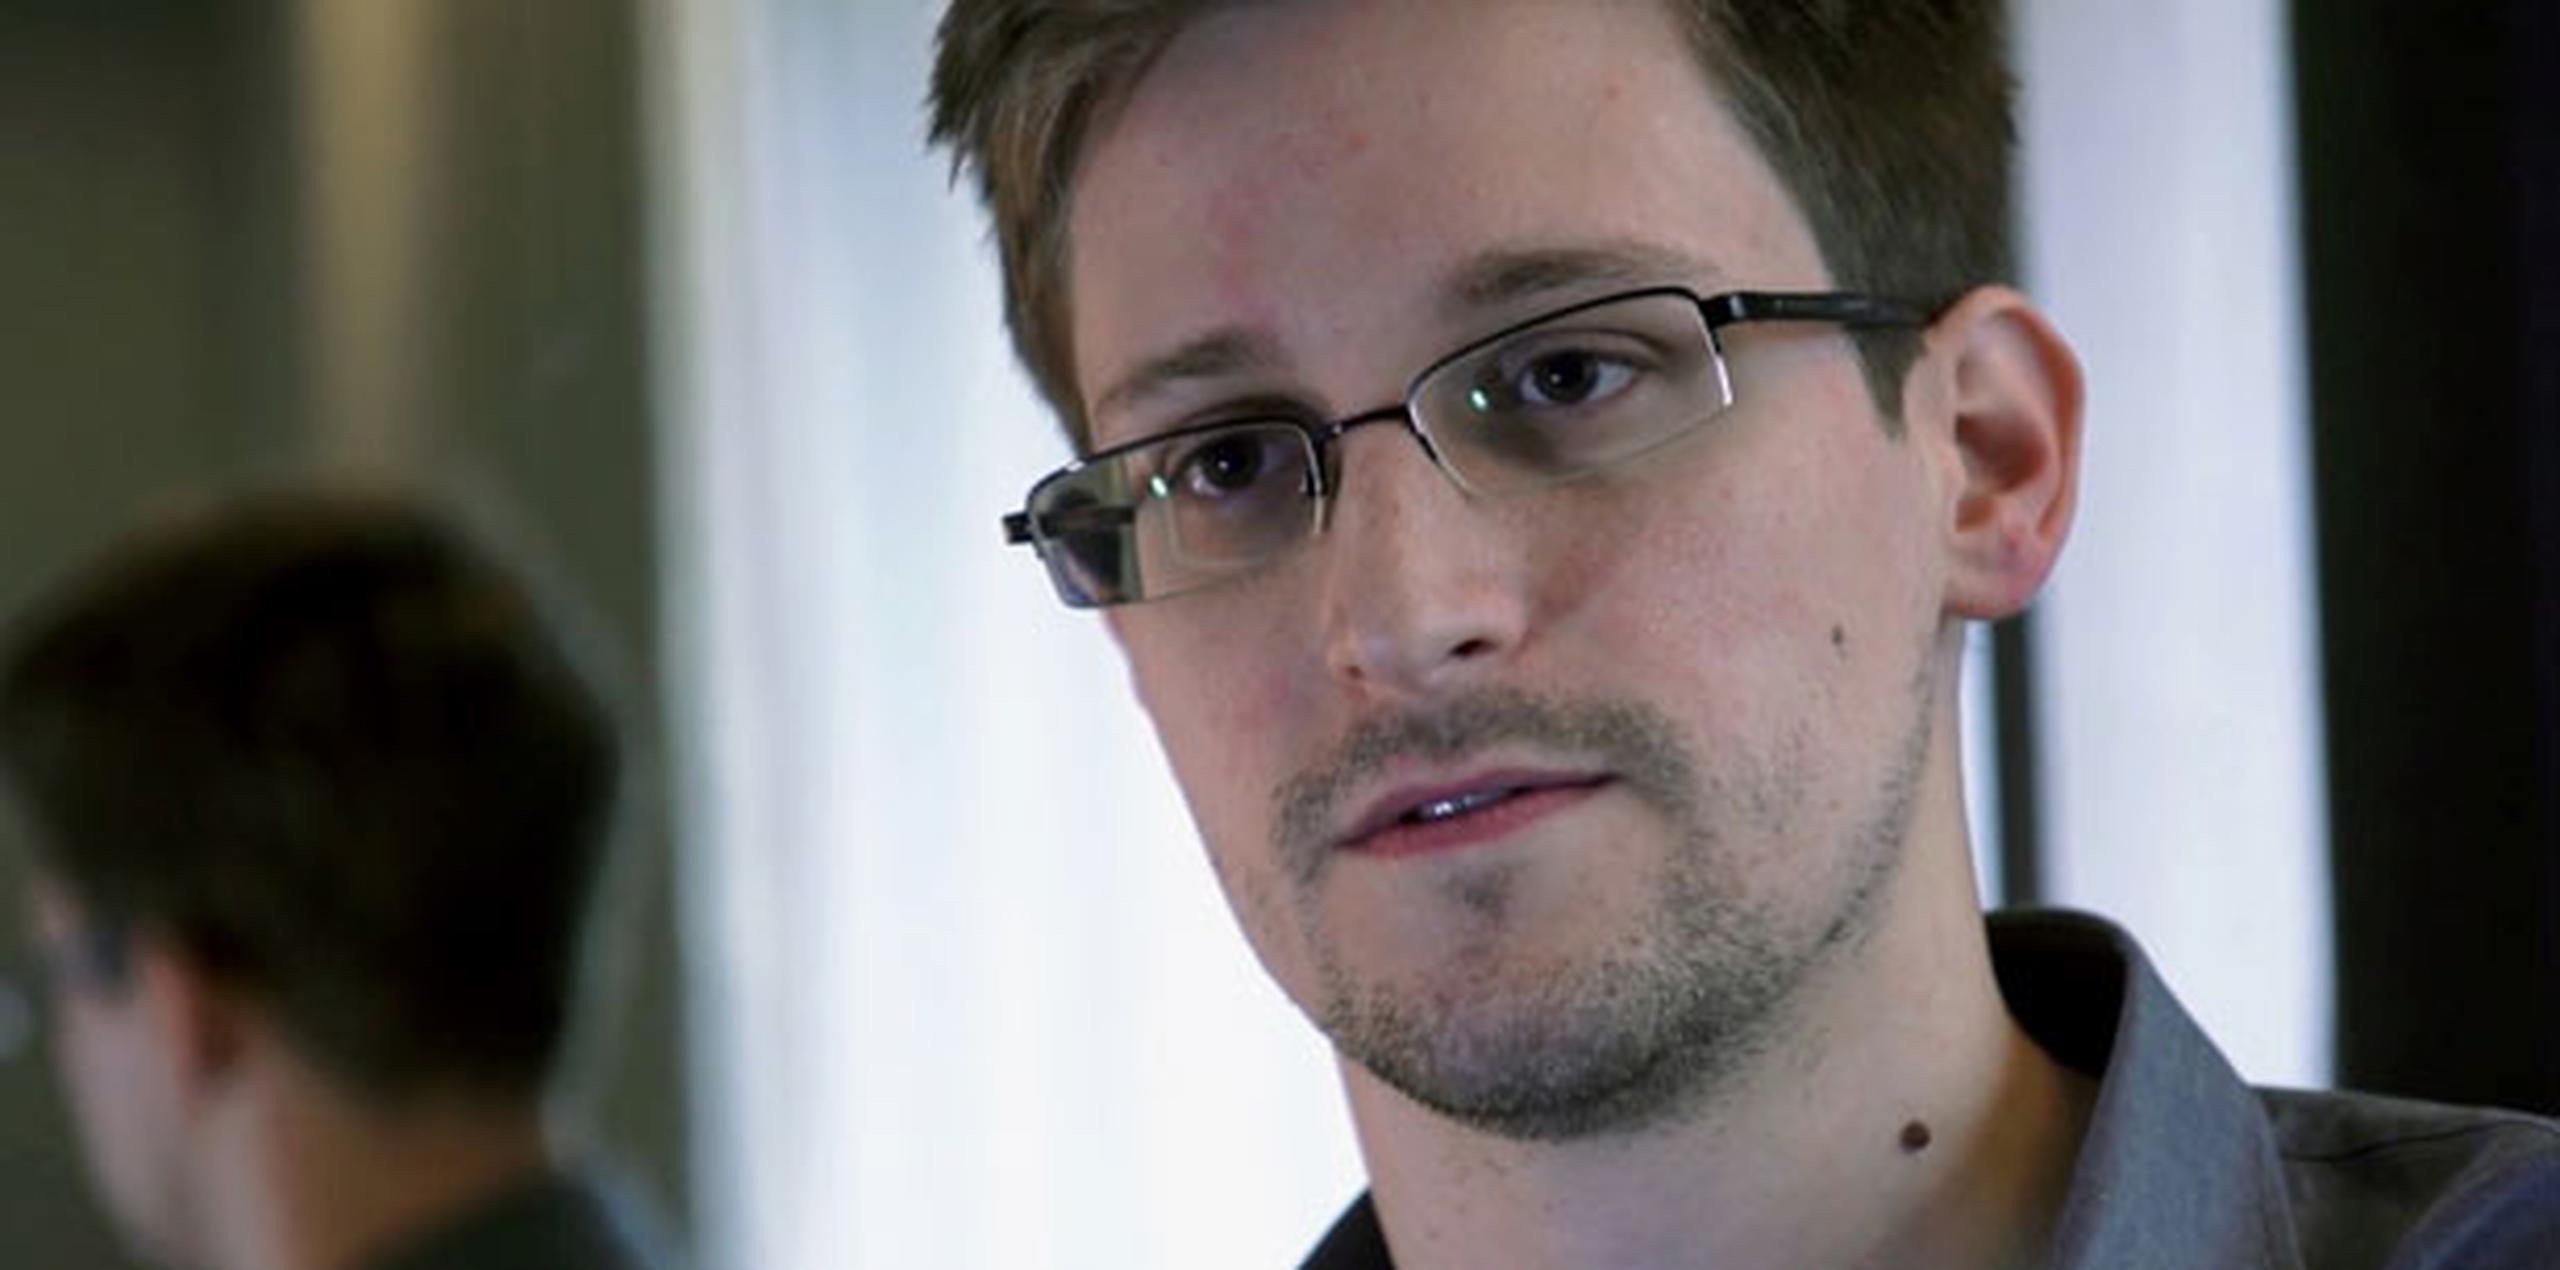 Snowden, que reveló a la prensa una trama de espionaje masivo de las comunicaciones por los servicios secretos de EEUU, se encuentra en la zona de tránsito del aeropuerto moscovita de Sheremétievo, adonde llegó el 23 de junio pasado procedente de Hong Kong. (Archivo)